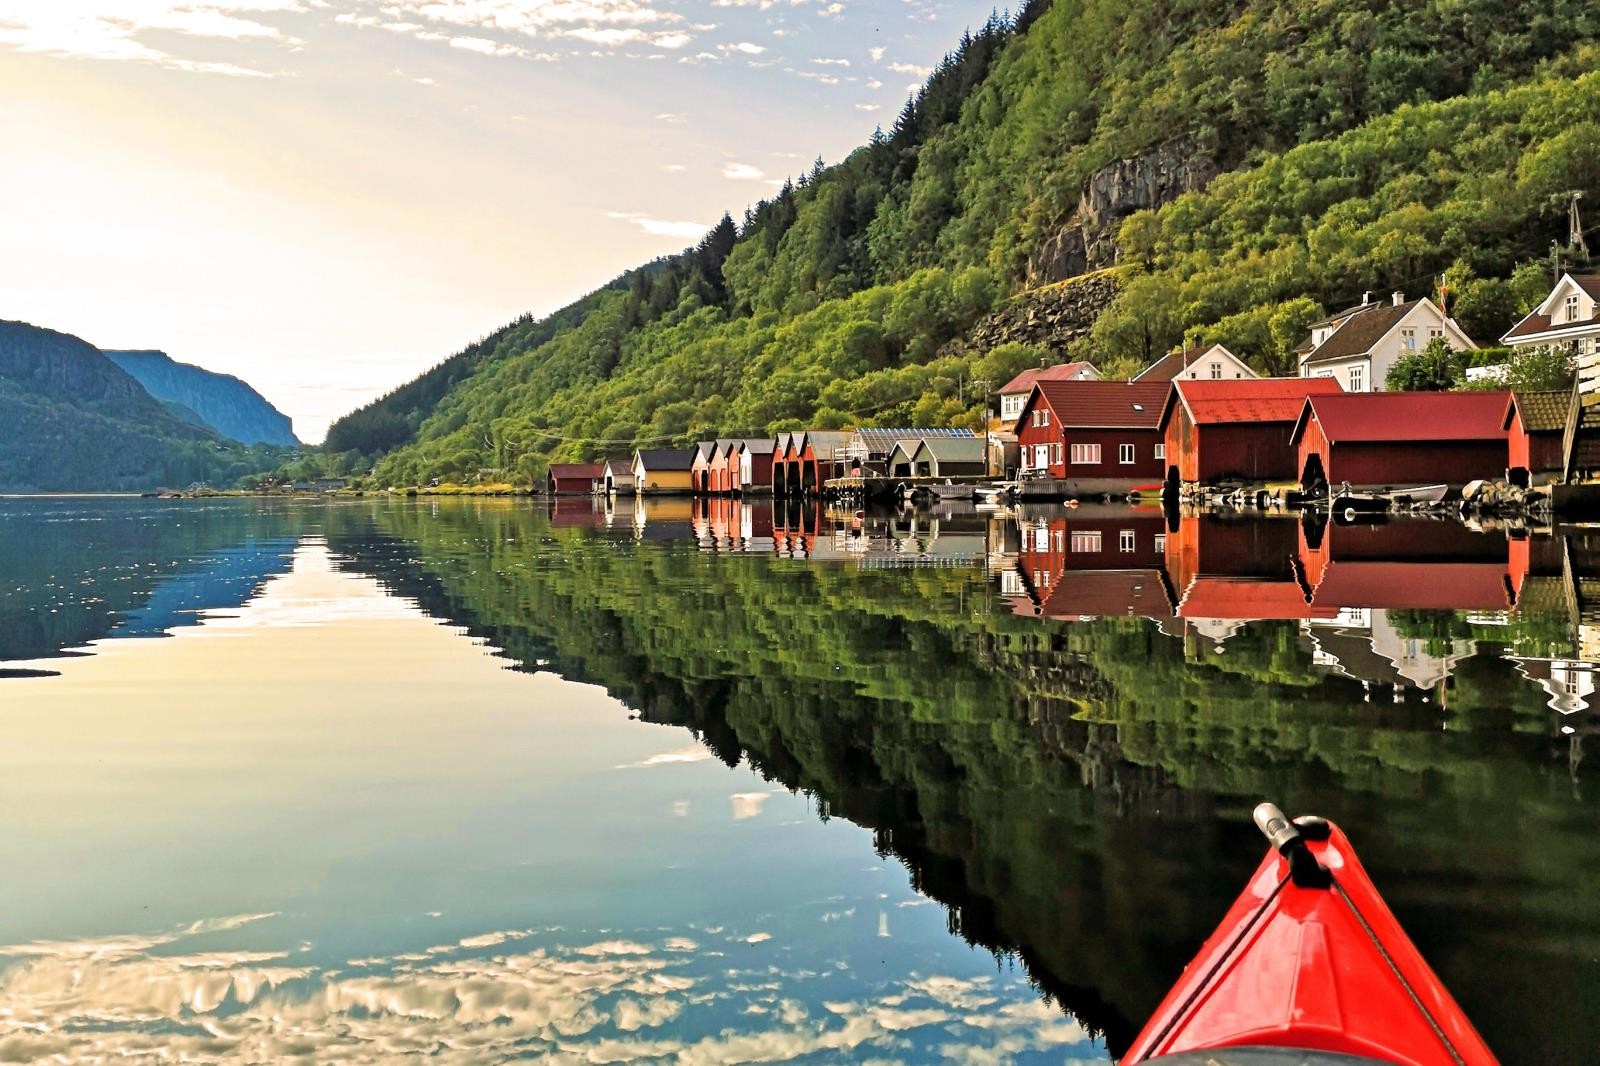 Ferienhaus Sigersvoll am Eidsfjord vor Hidra, Südnorwegen